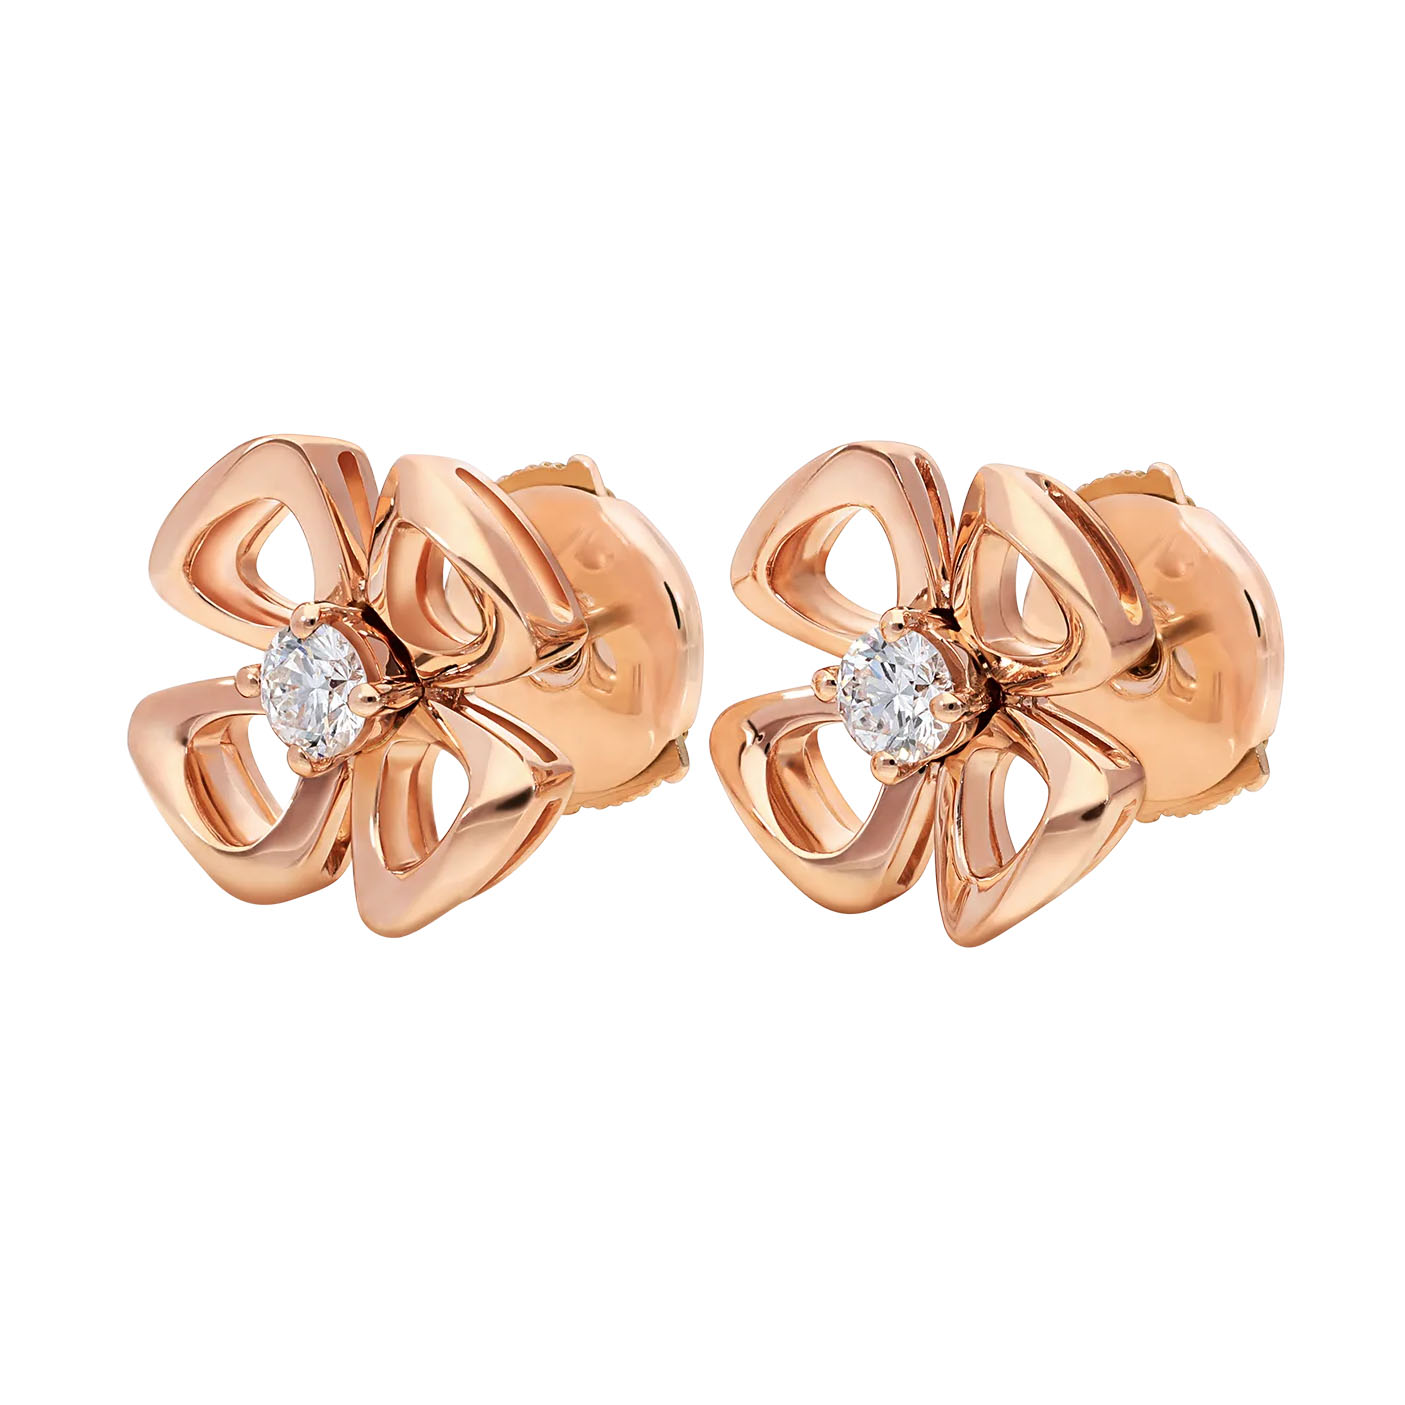 Boucles d'oreilles de bijoux OEM/ODM en or rose 18 carats, design personnalisé, serties de deux diamants centraux, service de bijoux OEM, vente en gros